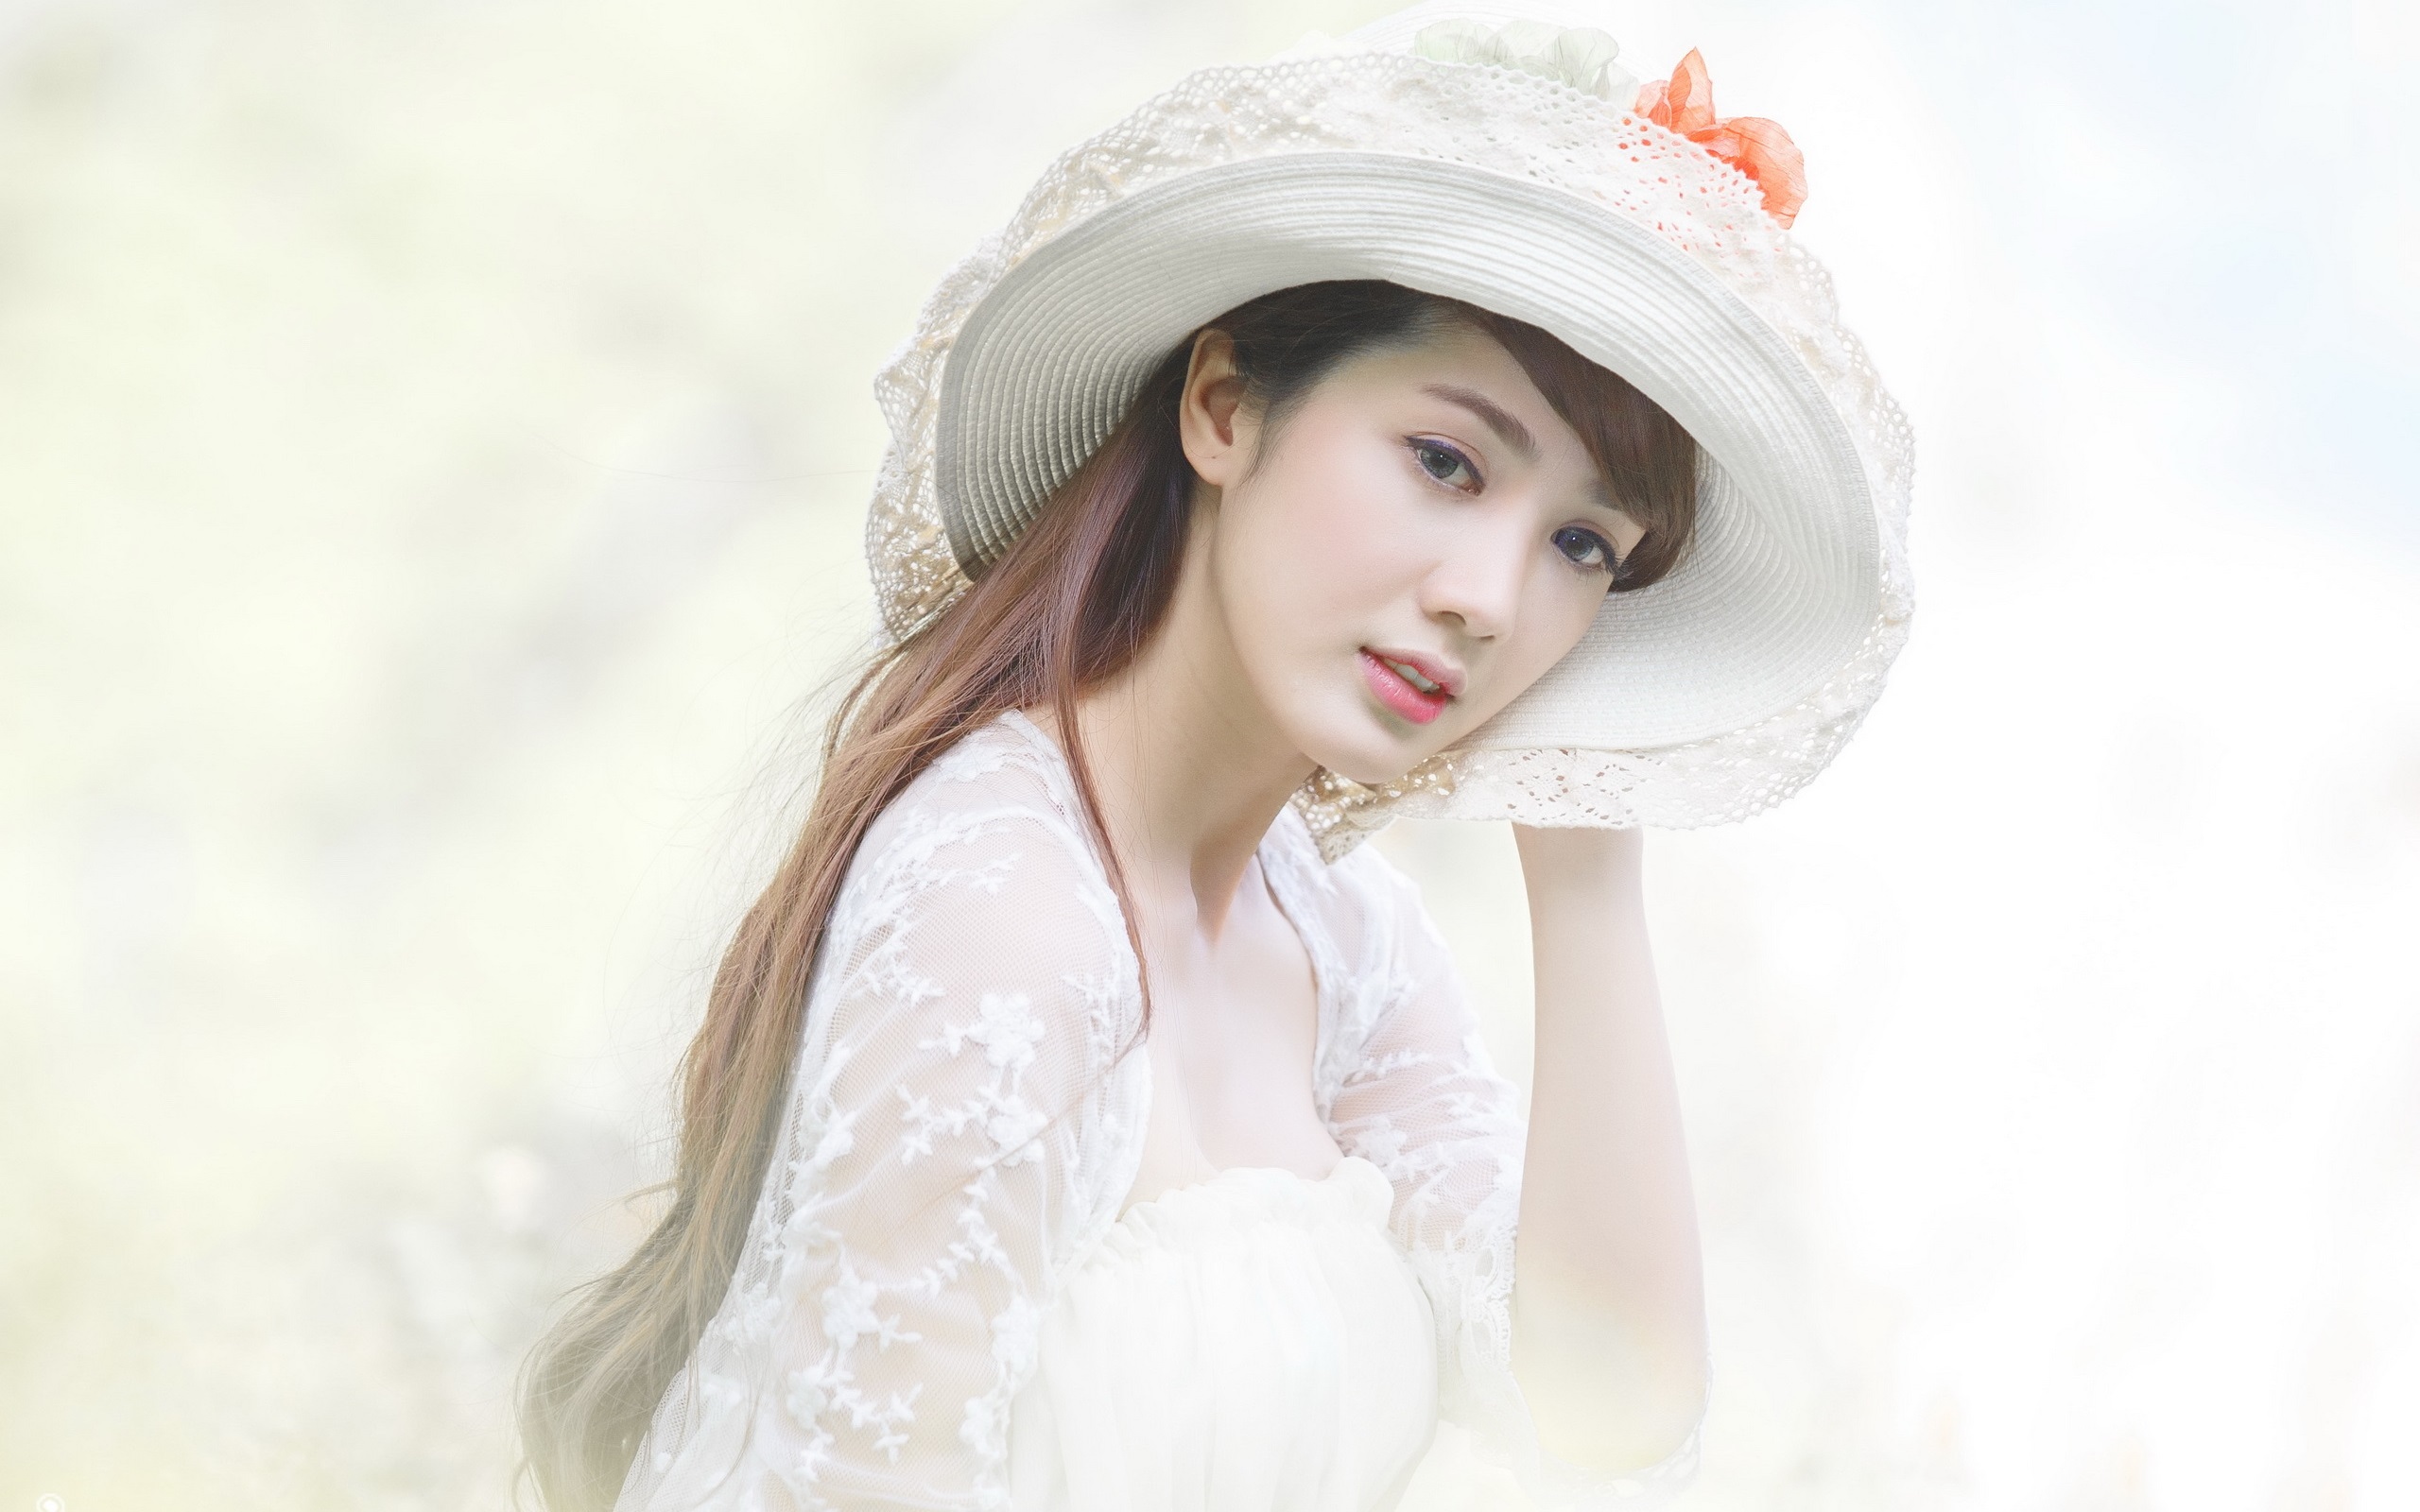 White-dress-asian-girl-hat_2560x1600.jpg